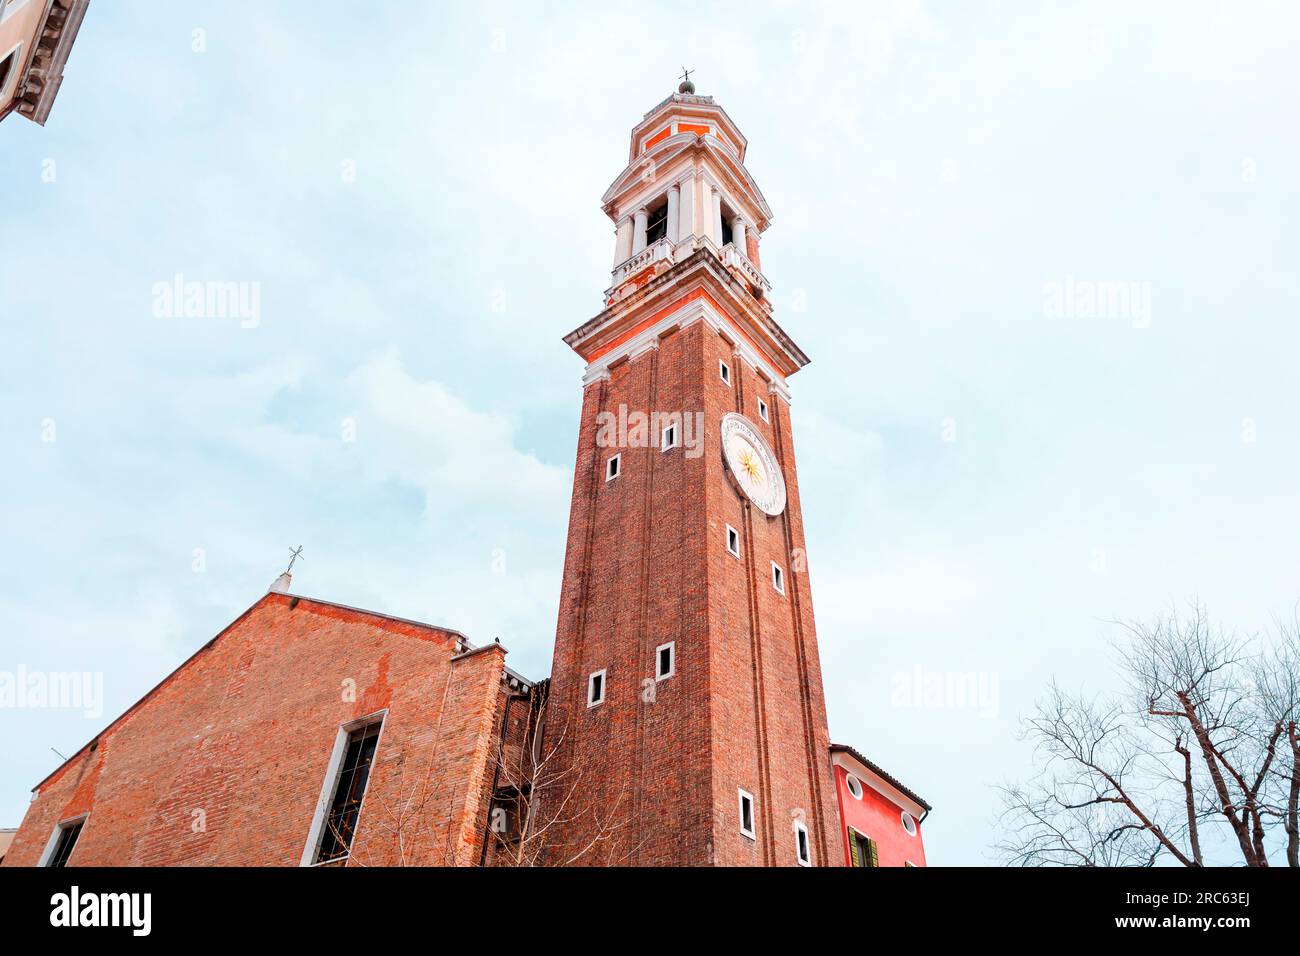 Orologio e campanile della Chiesa dei Santi Apostoli di Cristo, Chiesa dei Santi Apostoli di Cristo nel sestiere di Cannaregio di Venezia. Foto Stock